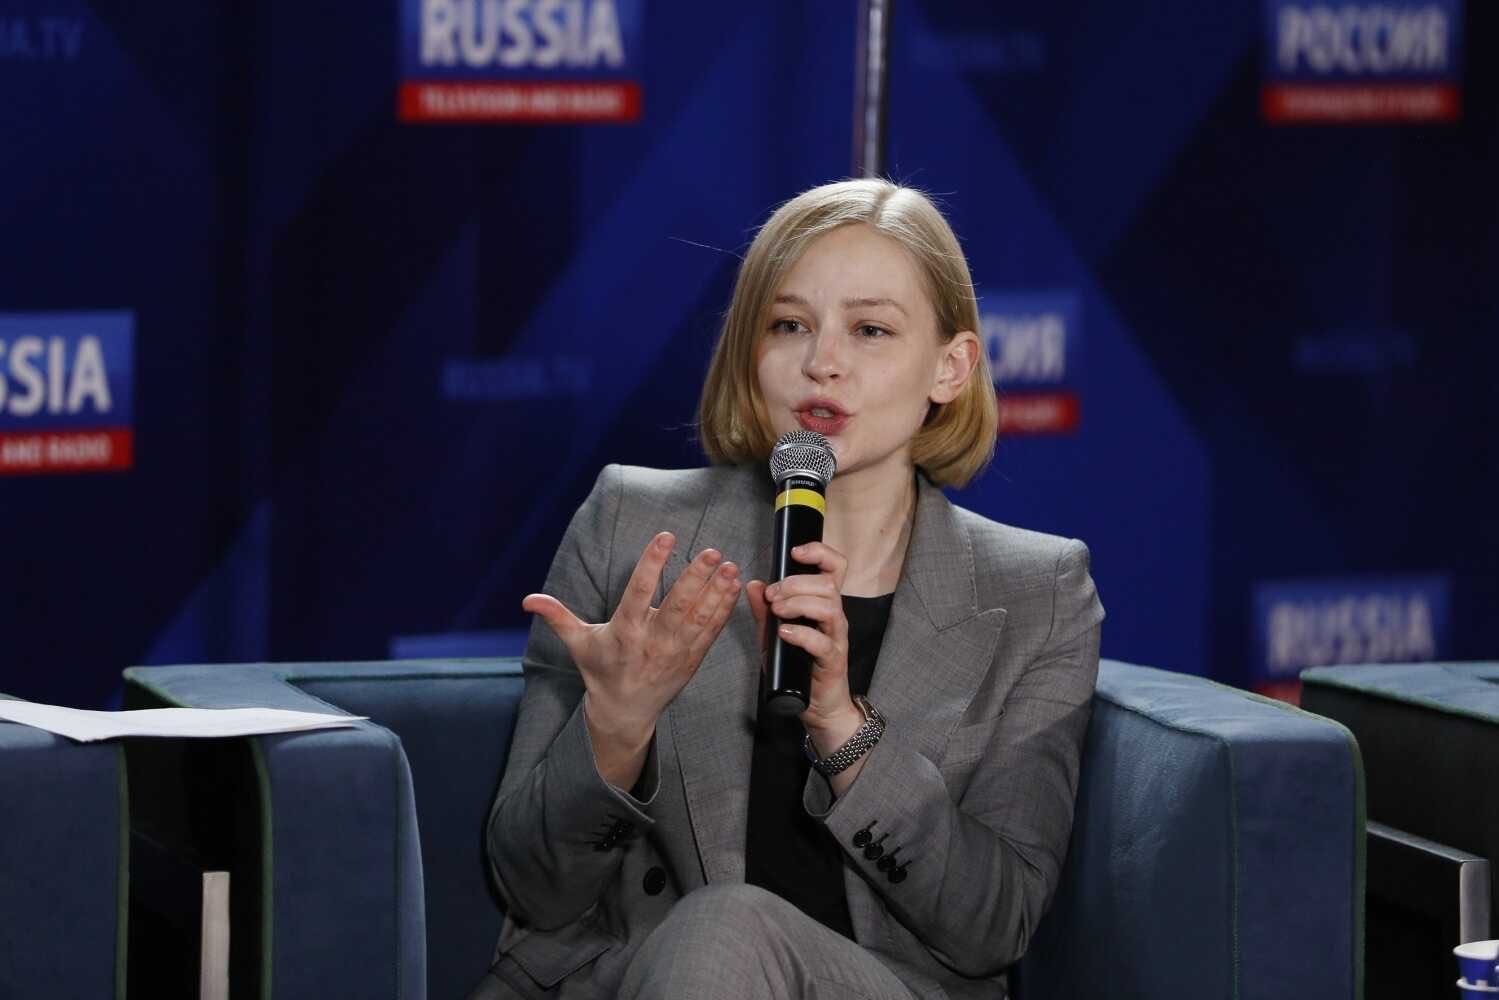 "Плакала": Юлия Пересильд отреагировала на критику своего полёта в космос